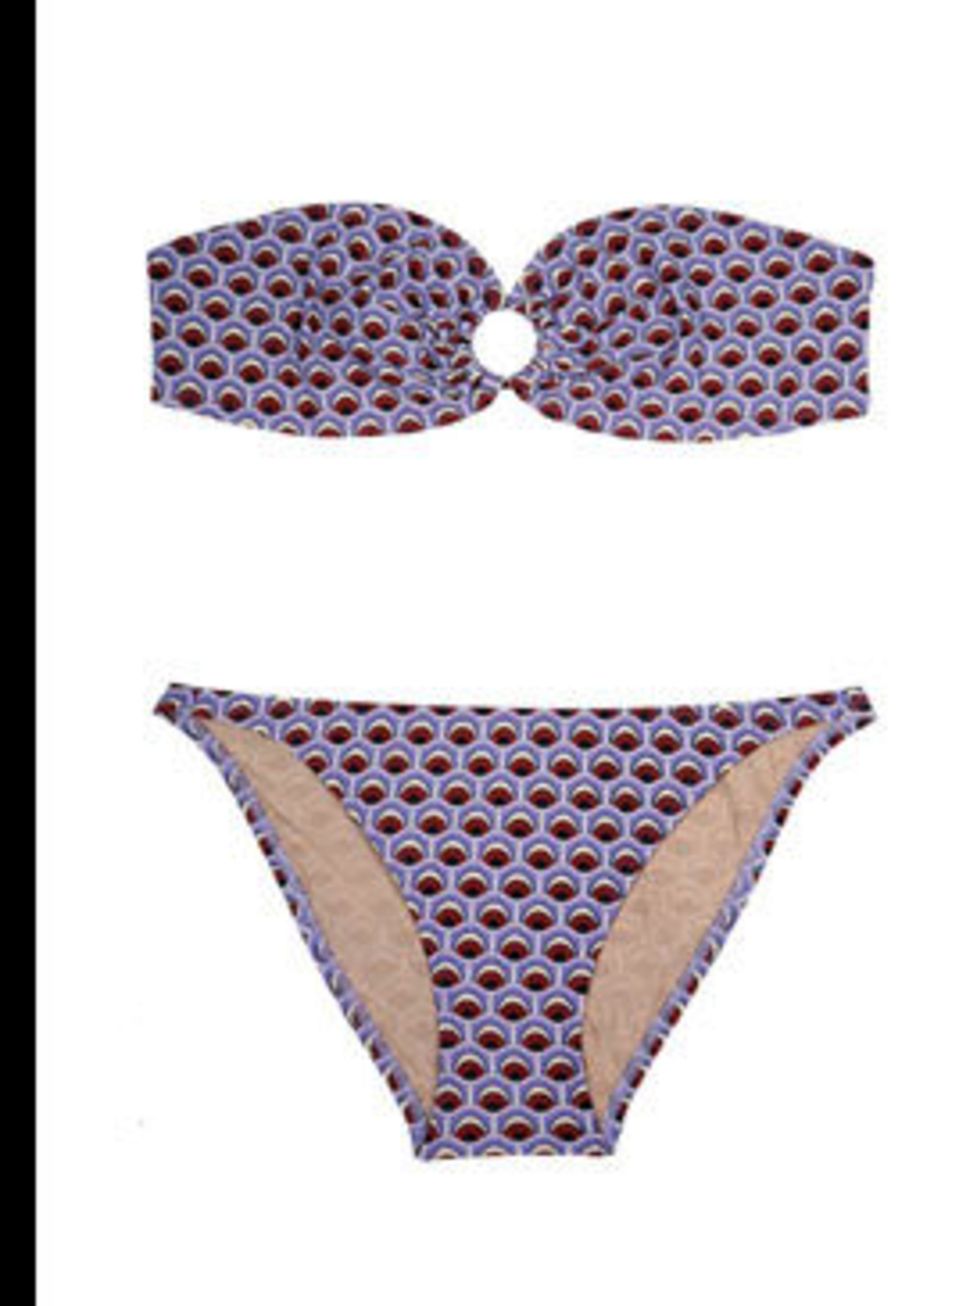 <p>Bikini, £146 by Paul &amp; Joe at <a href="http://www.my-wardrobe.com/paul-joe/purple-essiam-strapless-bikini-by-paul-joe">My-Wardrobe</a></p>